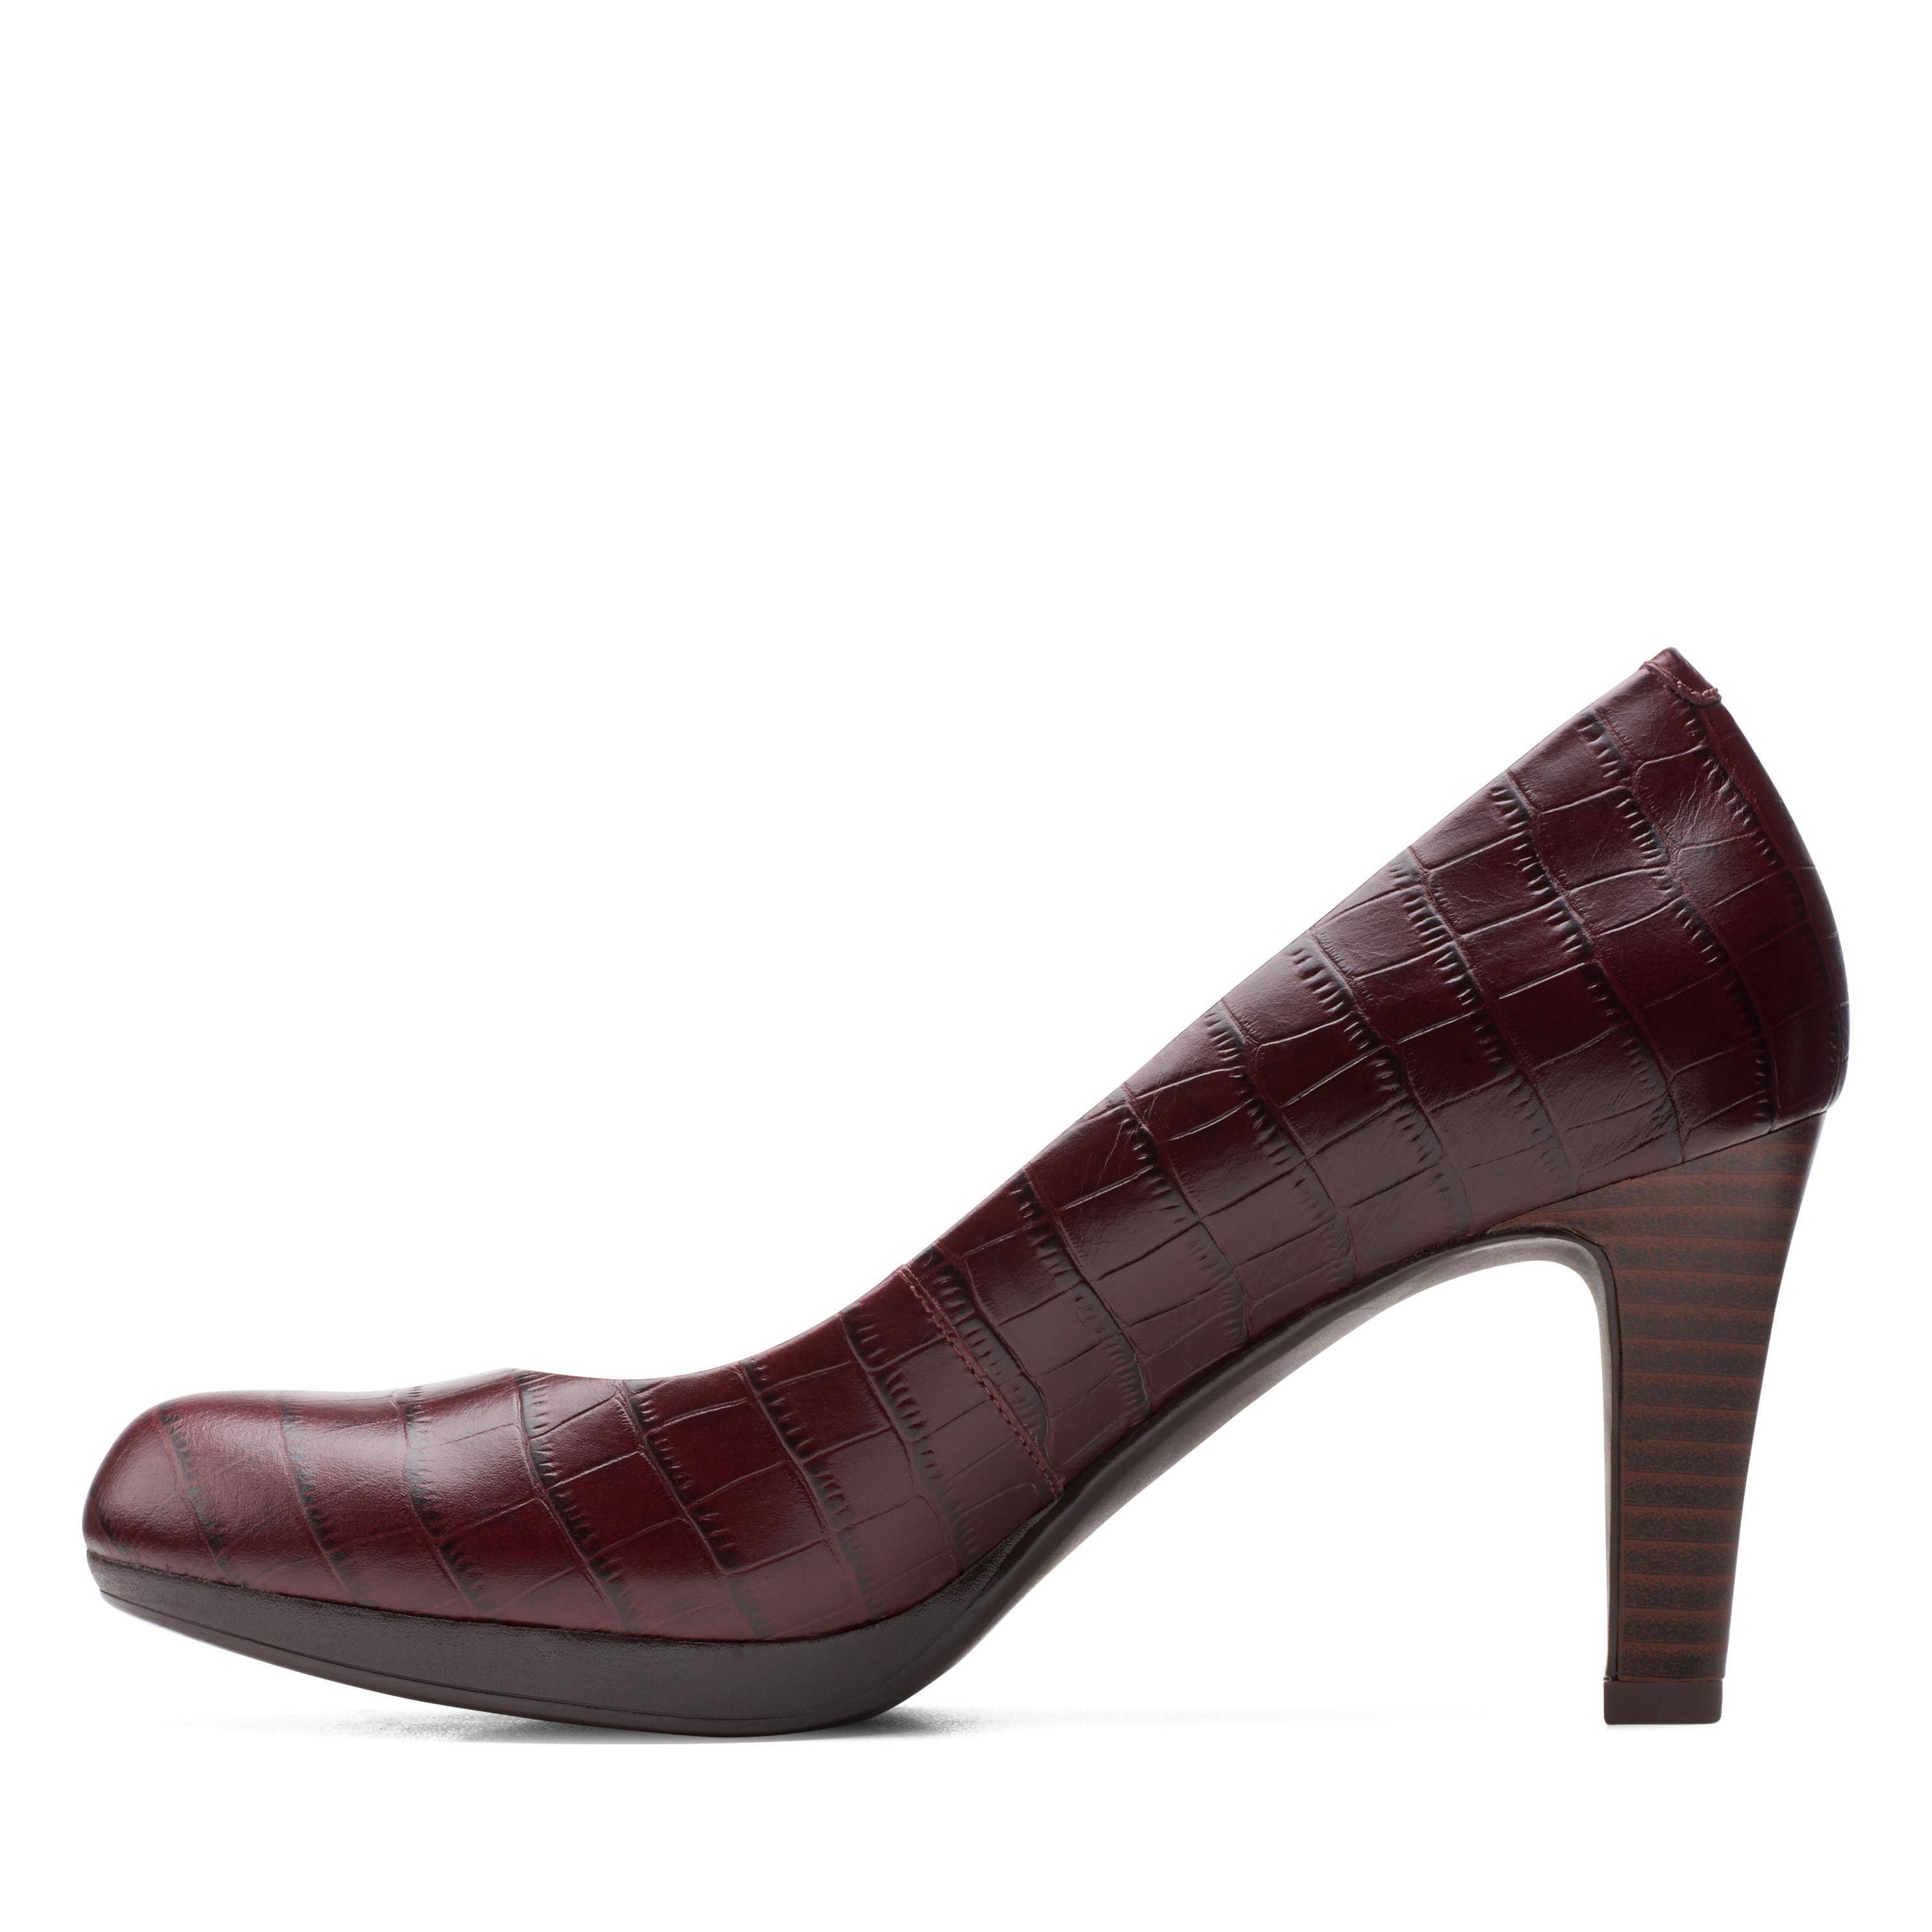 Женские туфли-лодочки Clarks(Adriel Viola 26151330), бордовые, цвет бордовый, размер 37.5 - фото 5